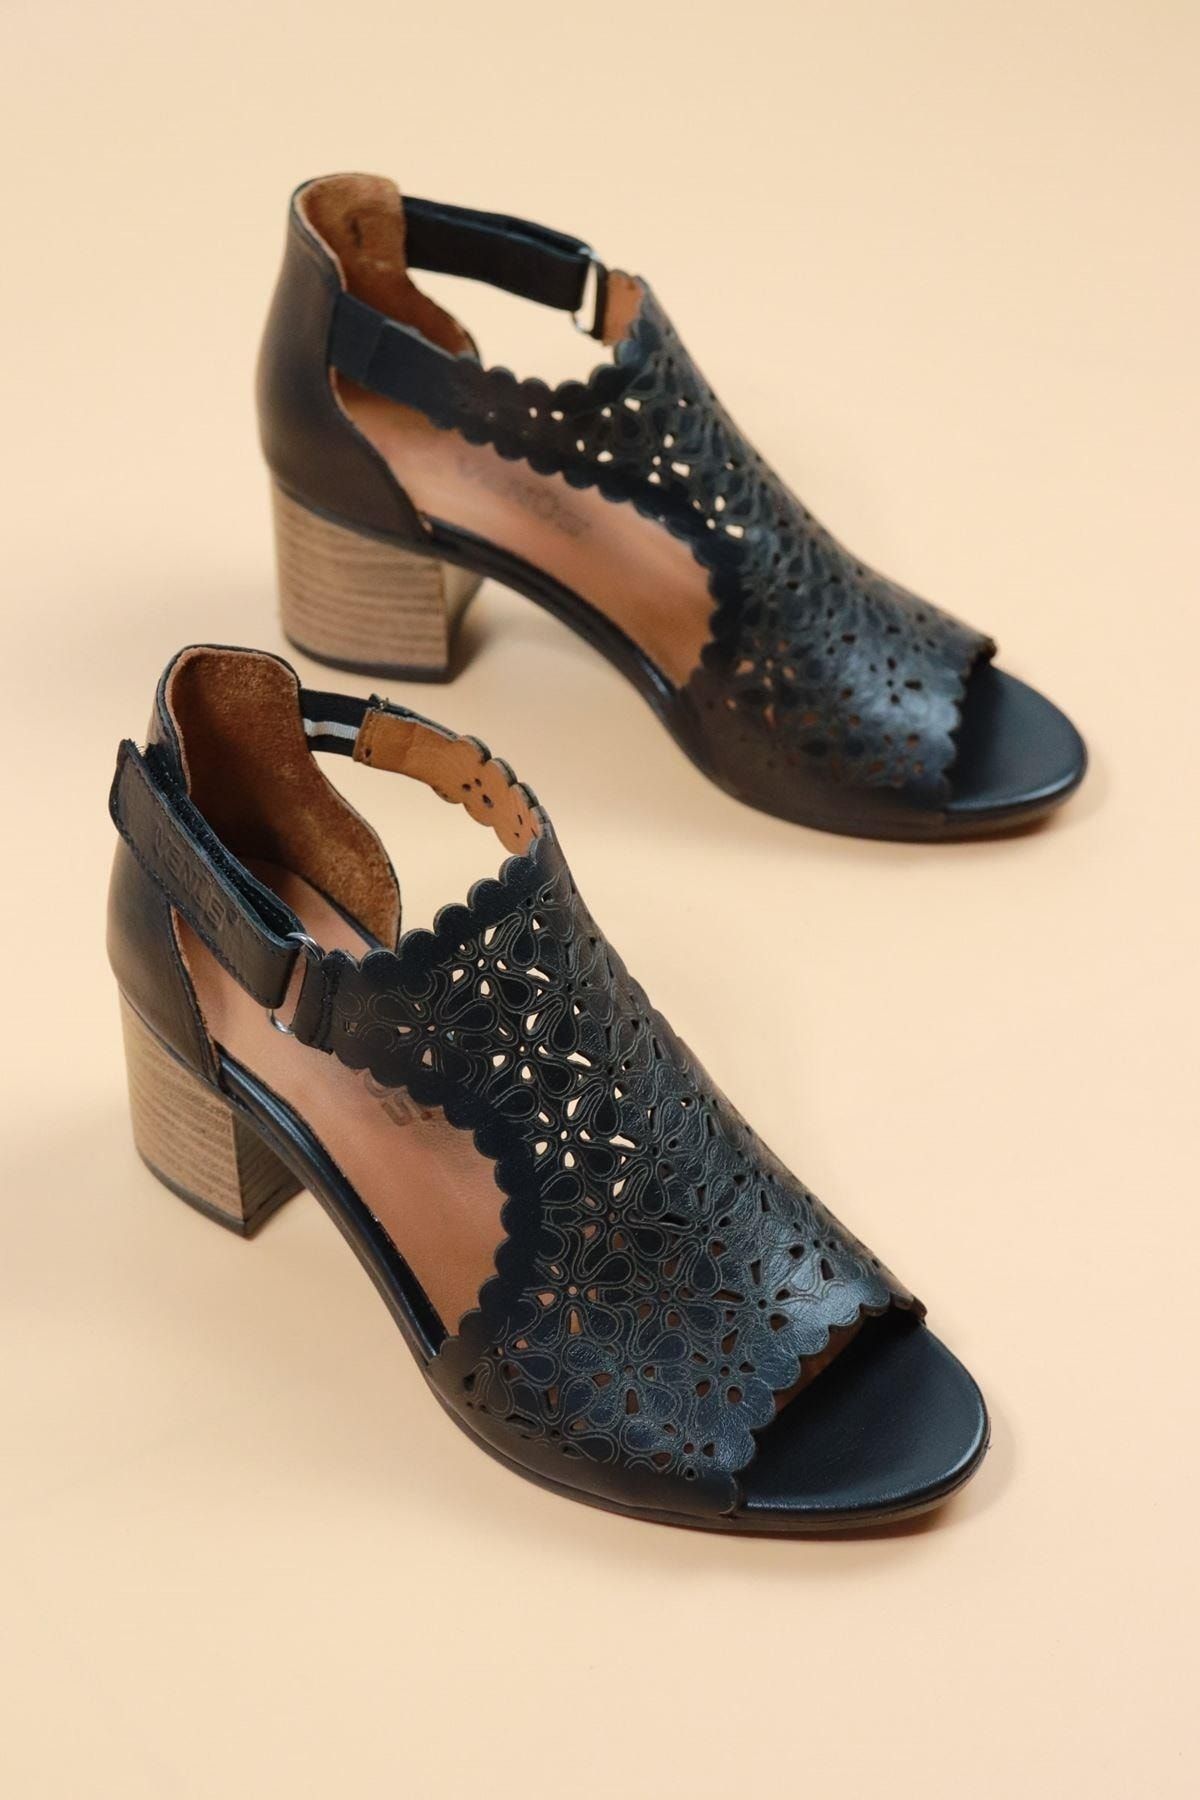 TREND AYAKKABI Venüs - 1857215 Siyah Renk Kadın Kafes Modeli Ayakkabı